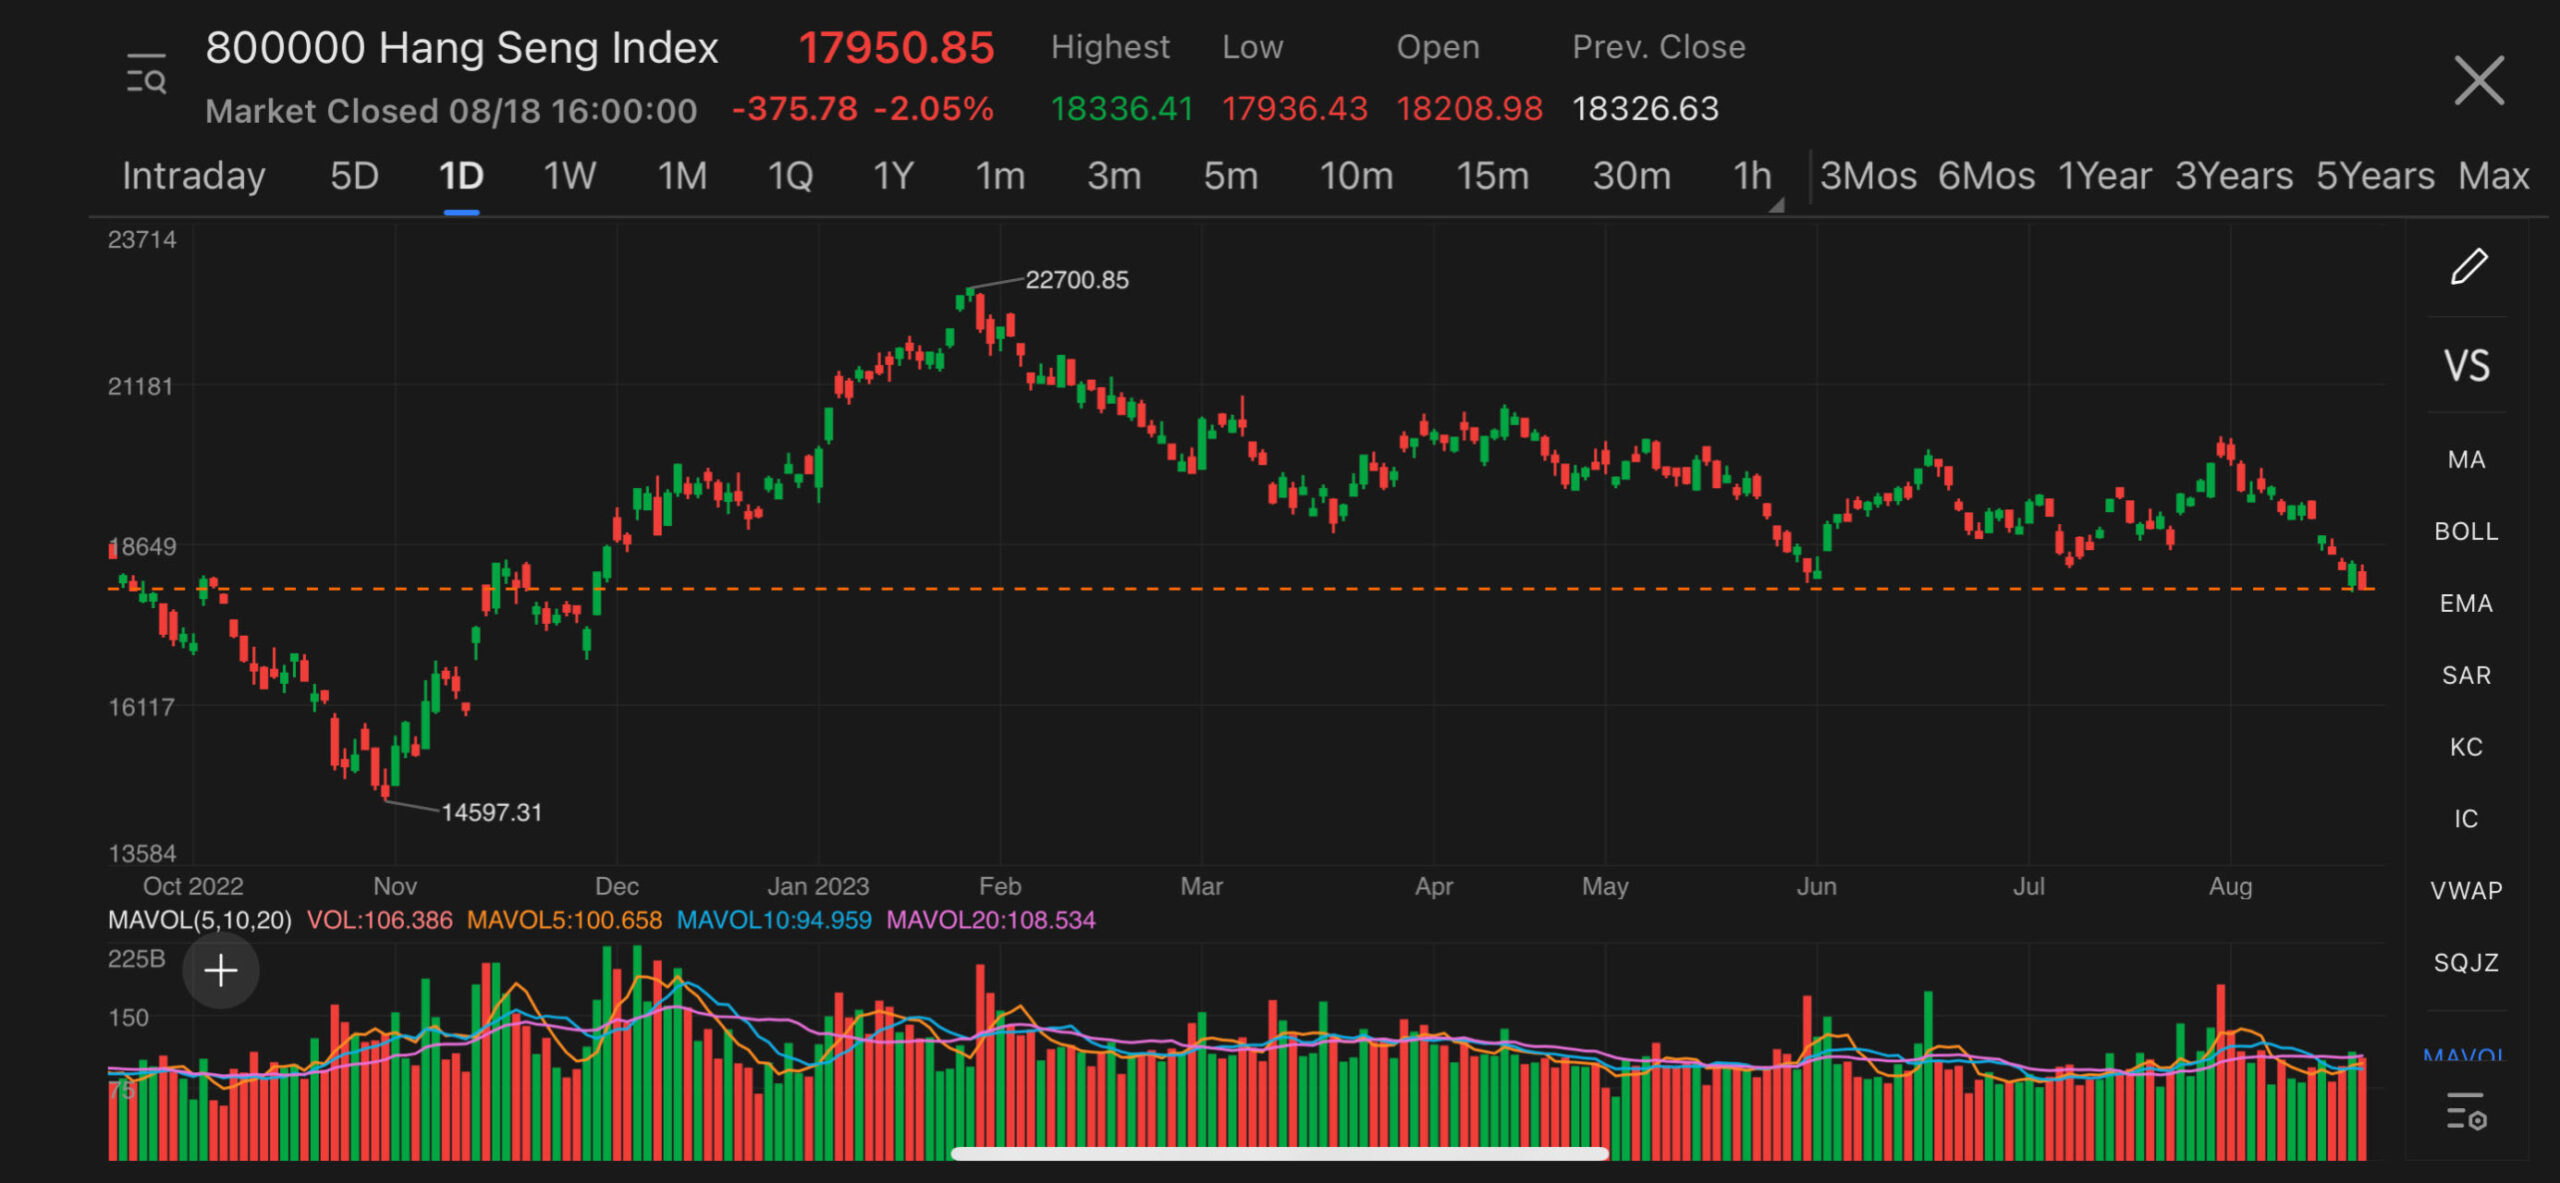 Hong Kong stocks tumbled on Friday, Hang Seng drops below 18,000 mark